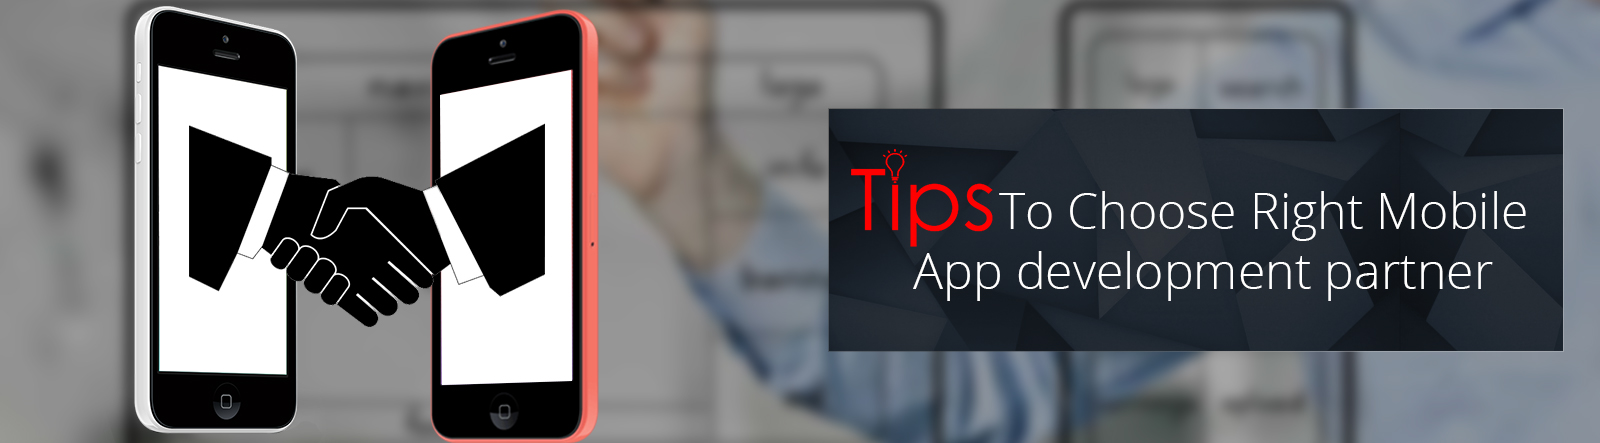 Tips to choose right mobile app development partner